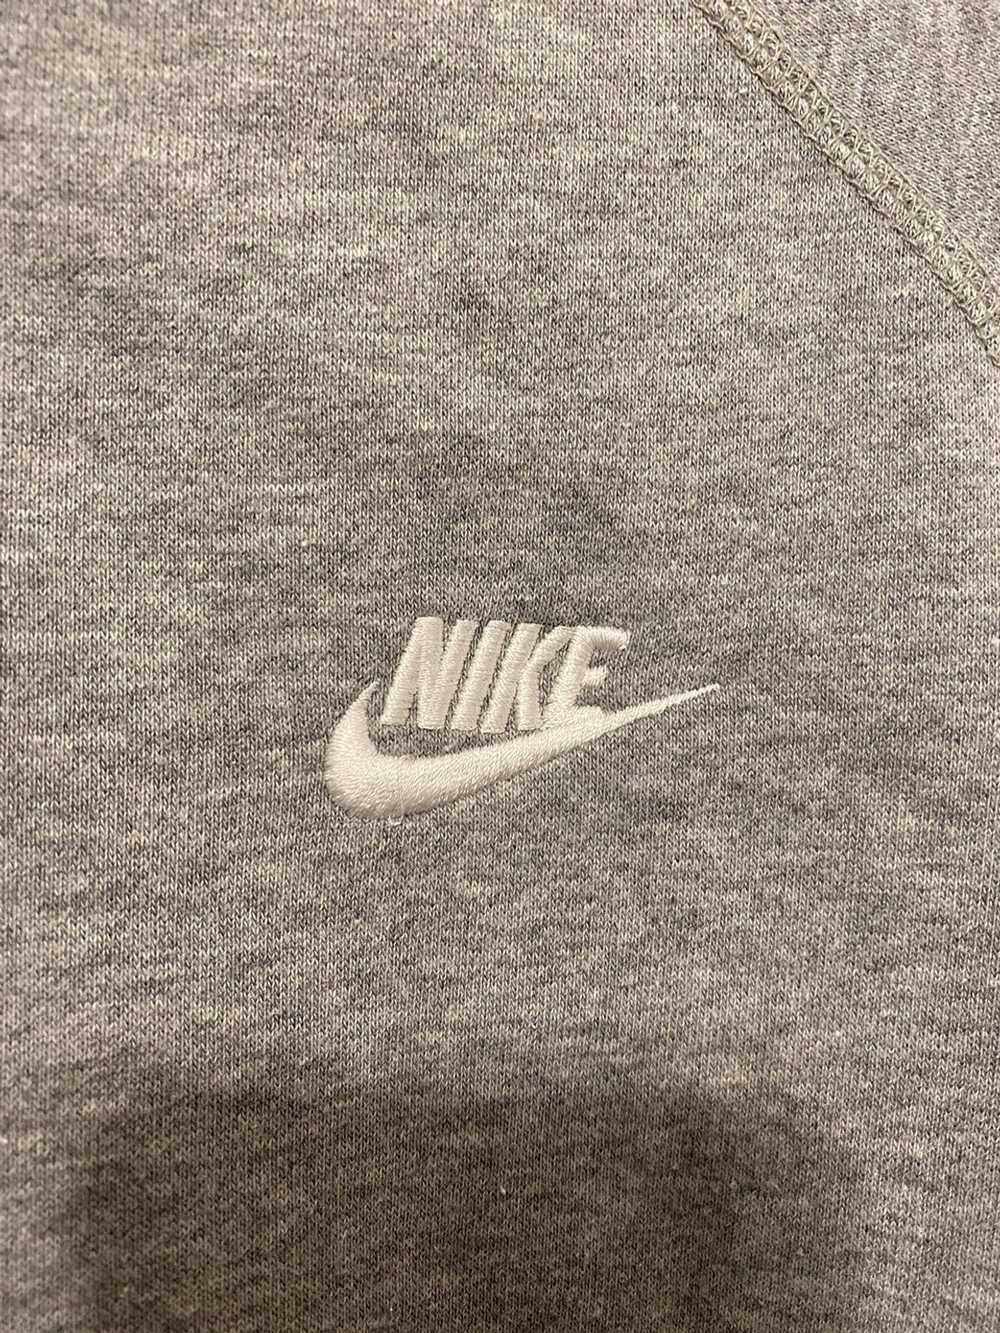 Nike Nike Jacket - image 2